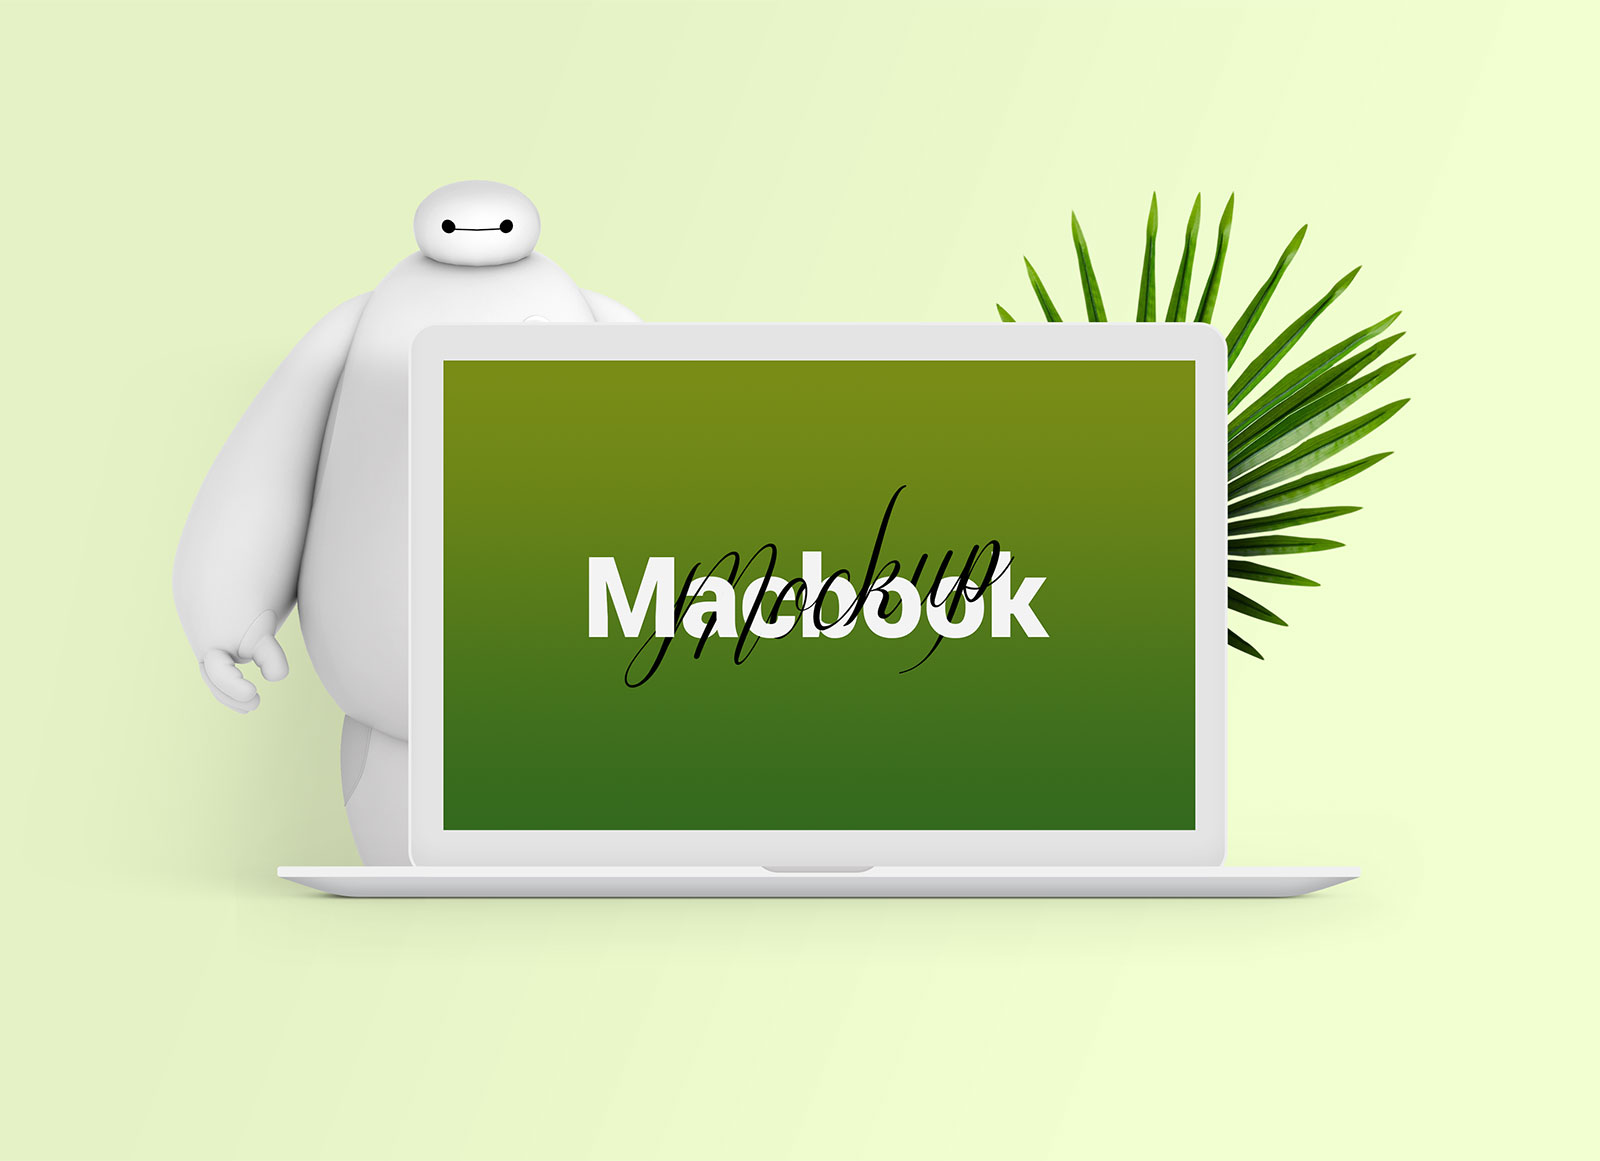 Maqueta de macbook de manzana blanca